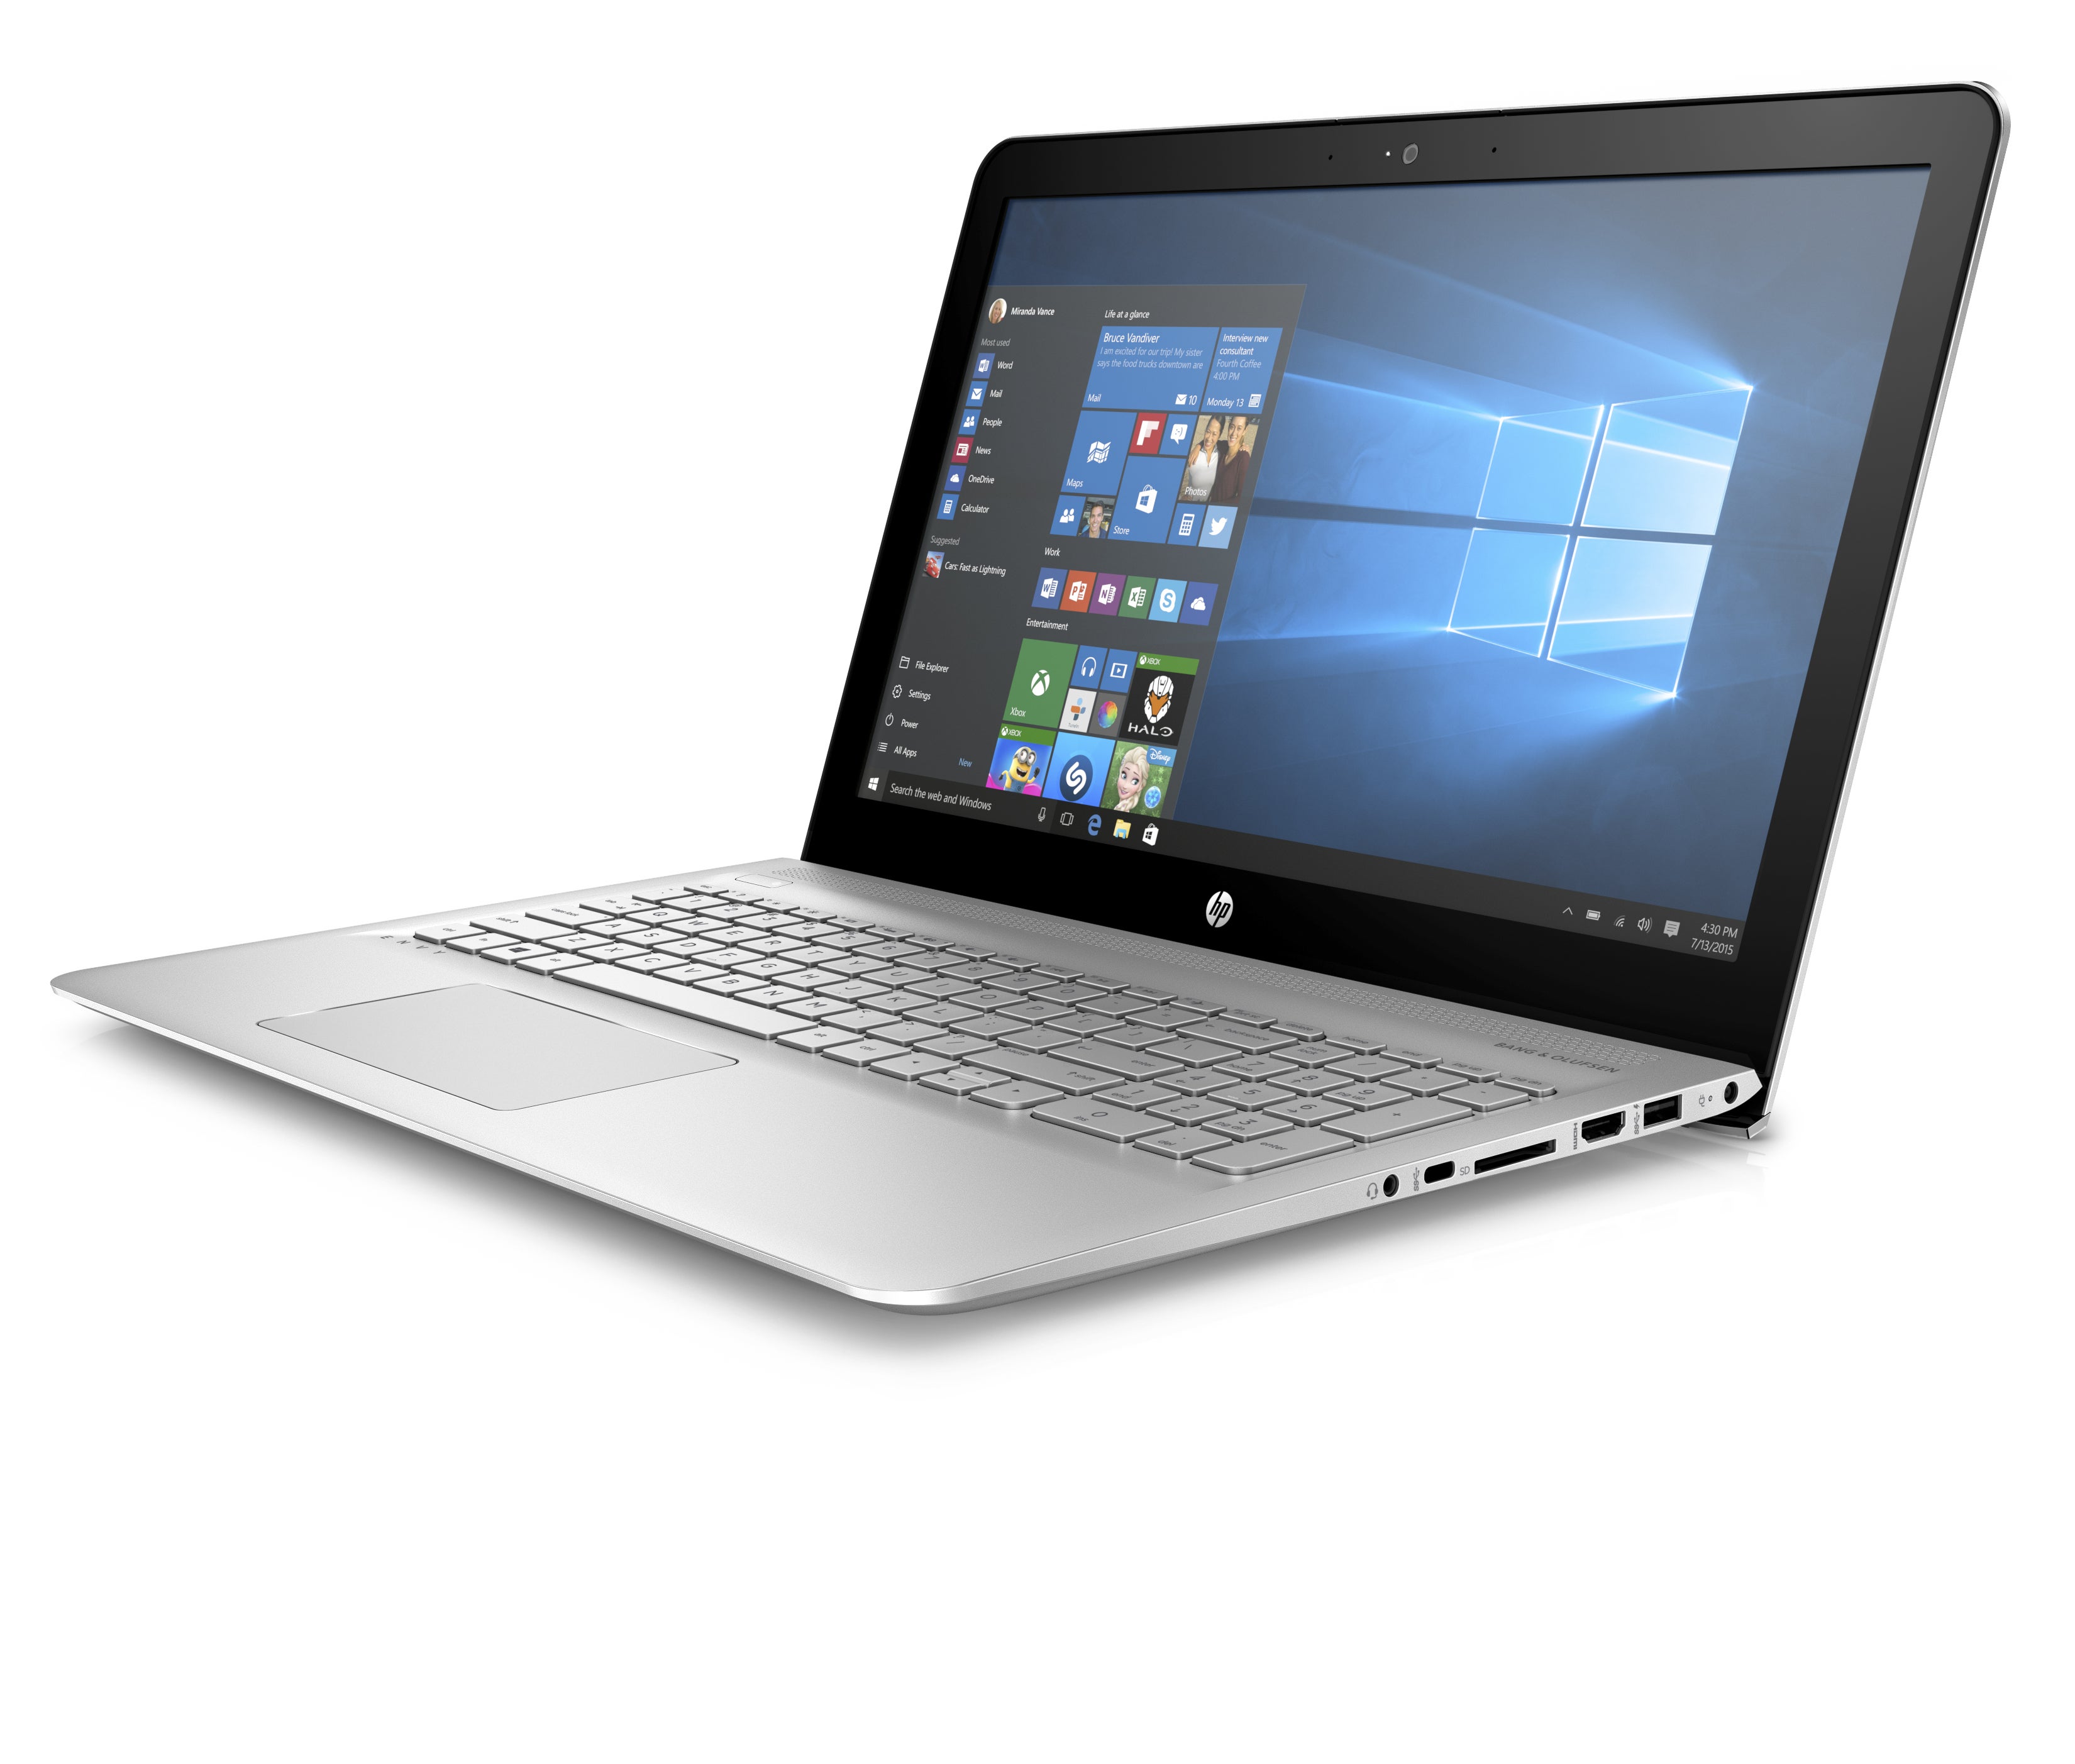 HP's Envy laptops pack longer battery life and AMD's new Bristol Ridge ...